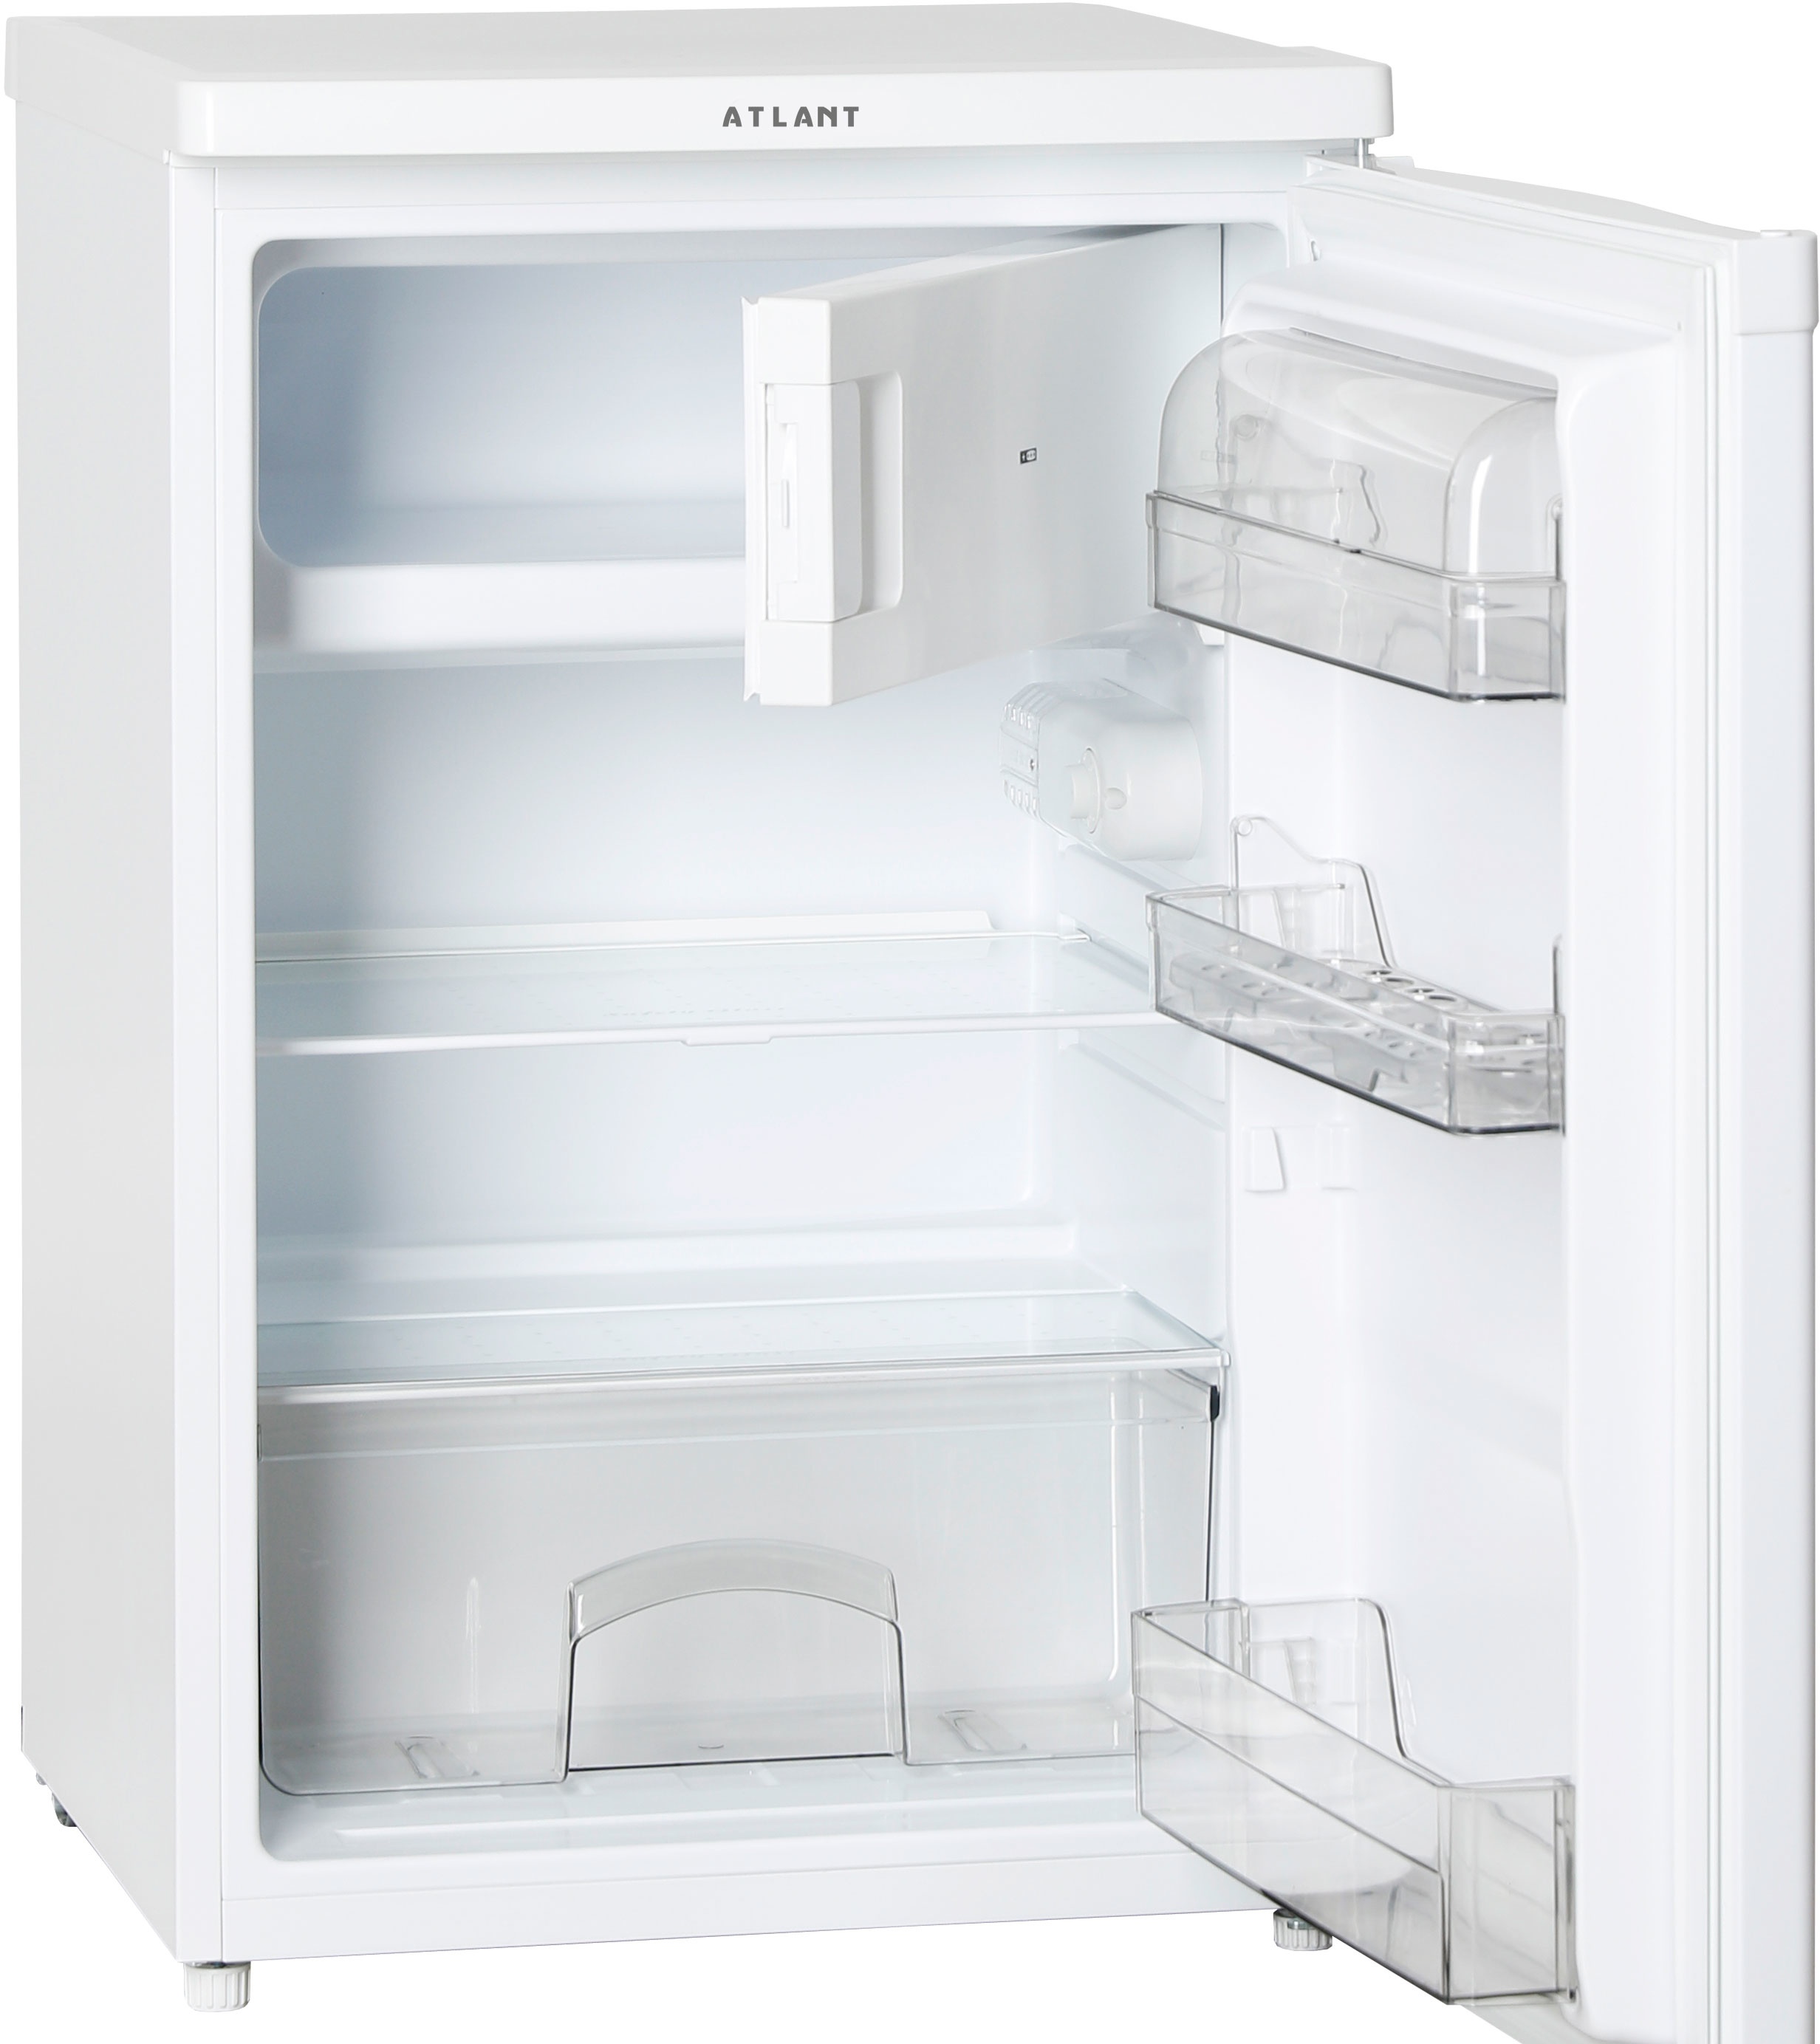 Купить однокамерный холодильник атлант. Однокамерный холодильник ATLANT Х 2401-100. Холодильник Атлант , однокамерный, белый х 2401-100. Холодильник ATLANT X 2401-100 белый. Холодильник Атлант 1401-100.